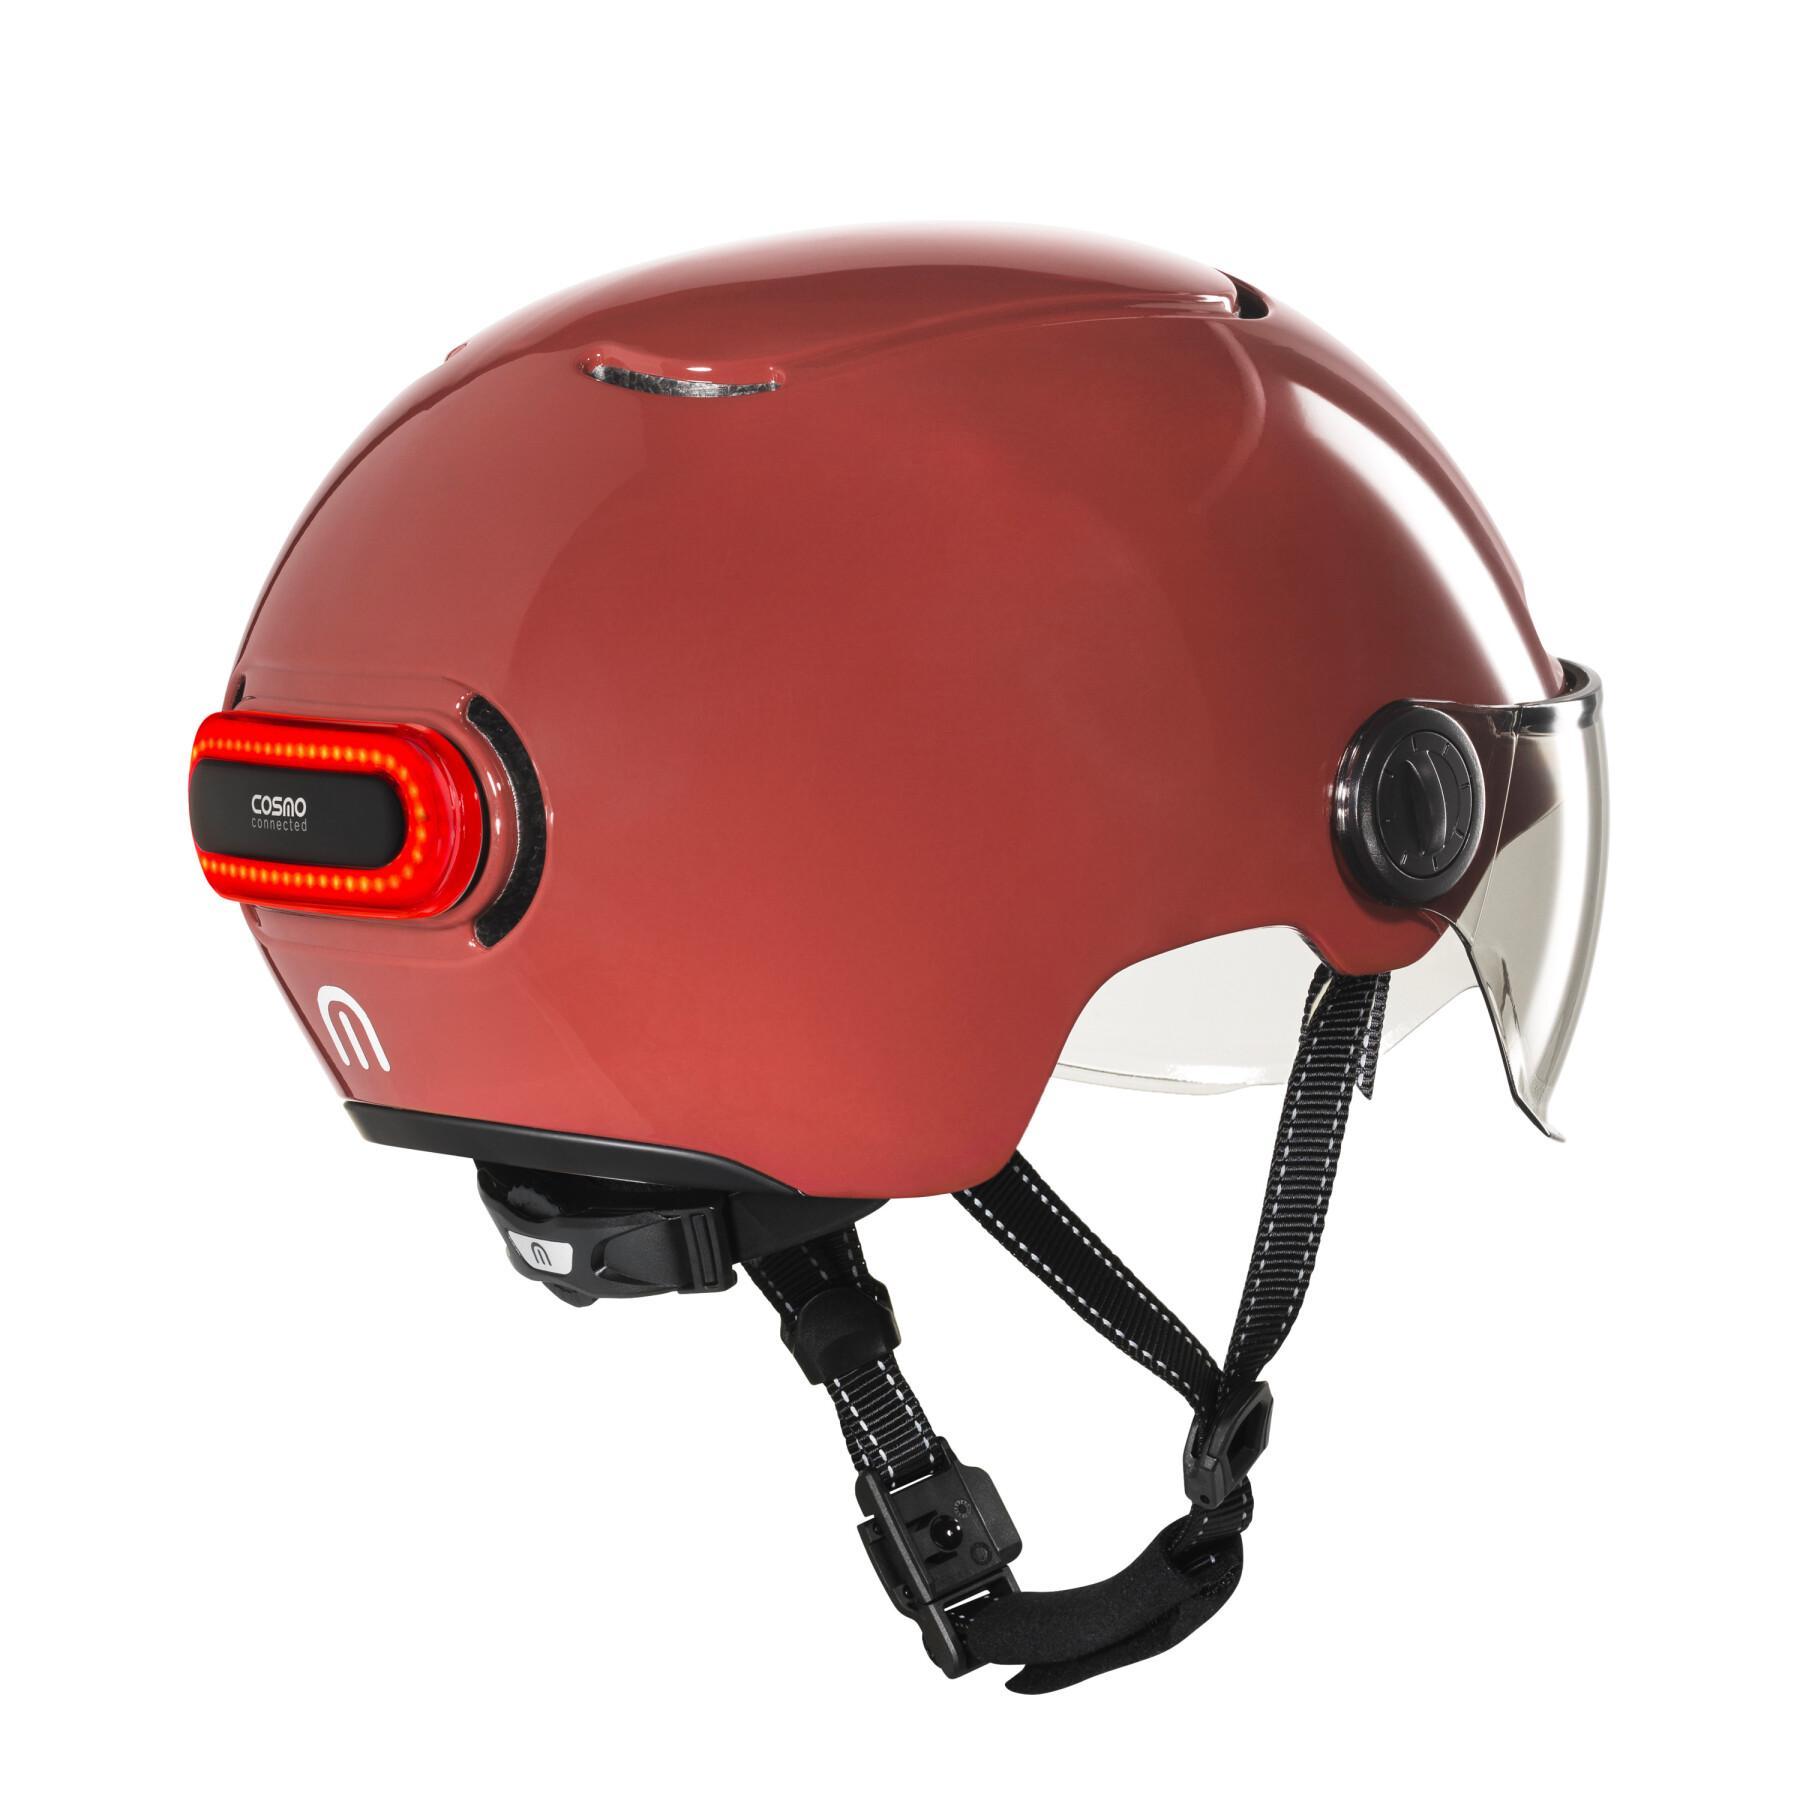 Ride-Helm ohne Tel Cosmo Fusion Premium